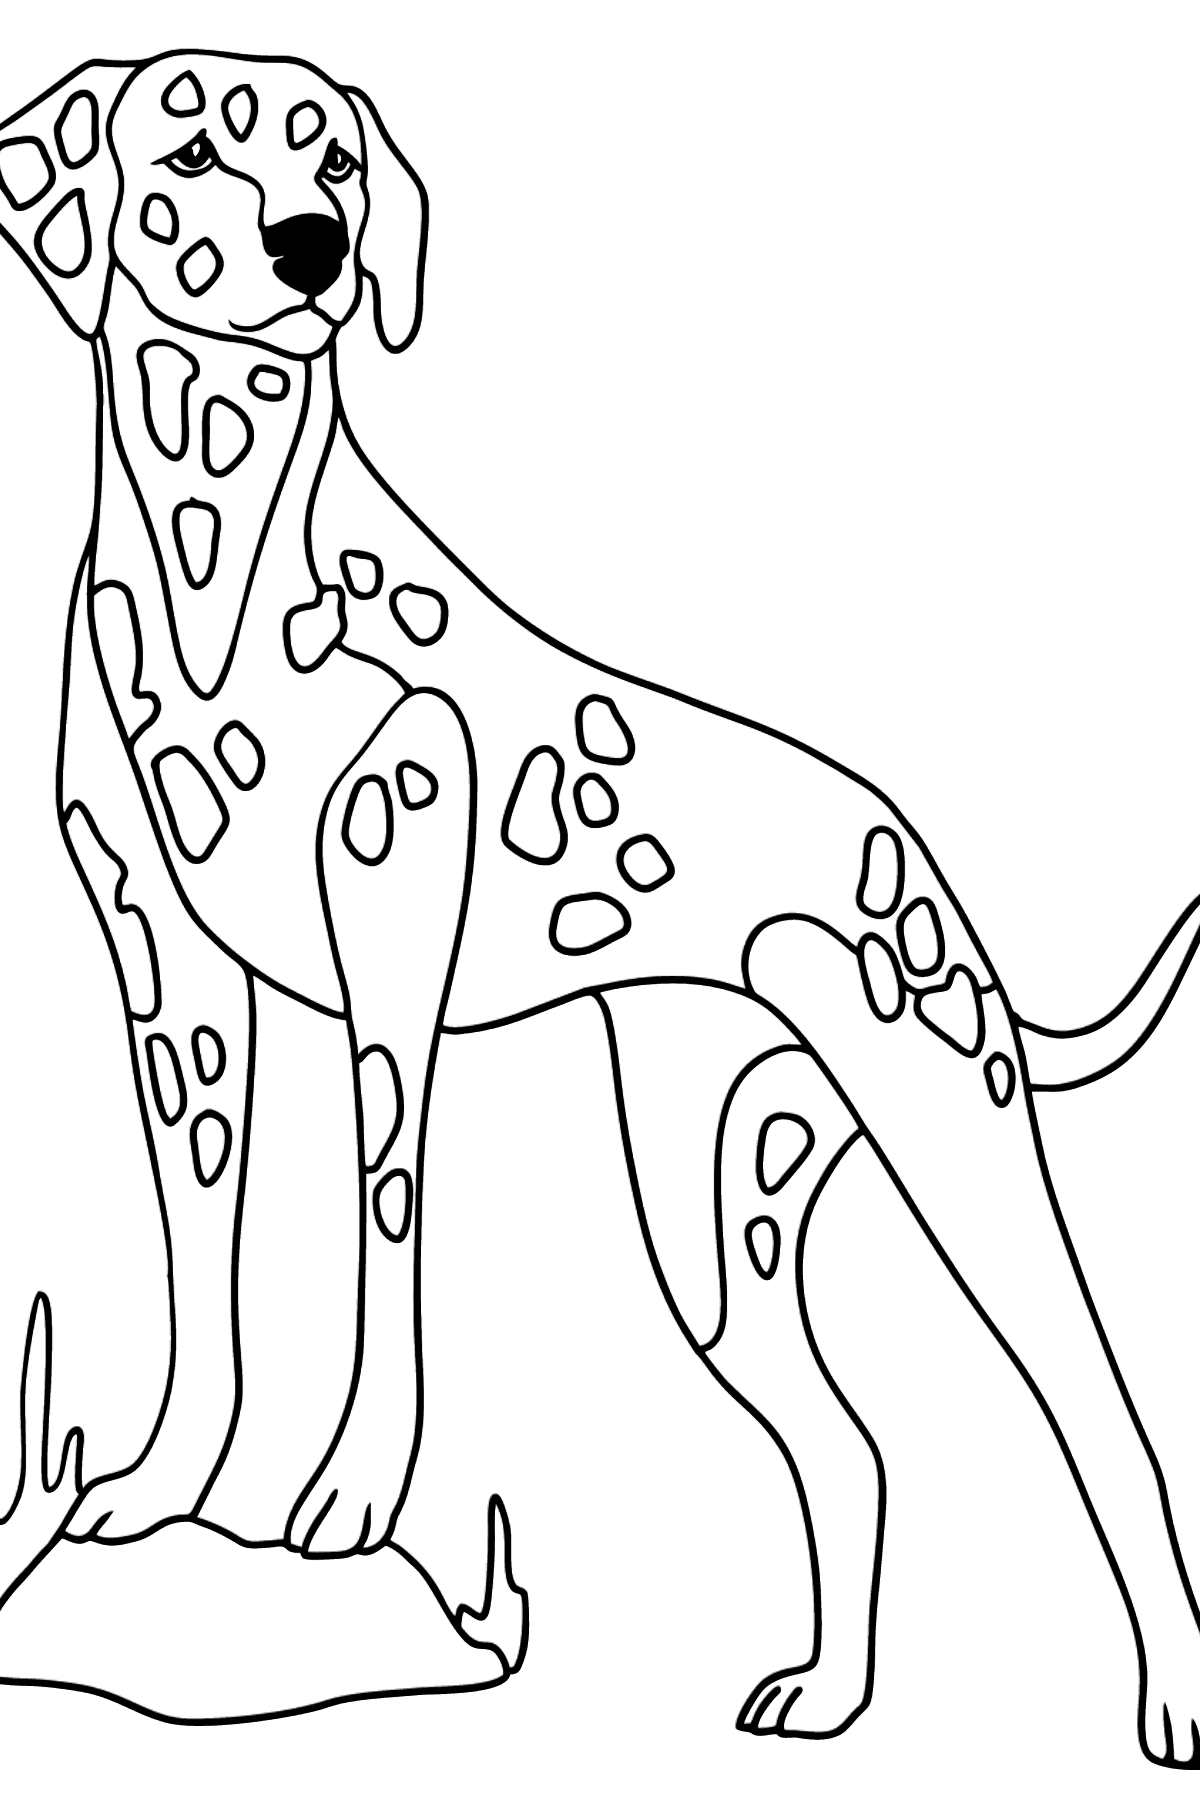 Далматинец из адопт ми раскраска